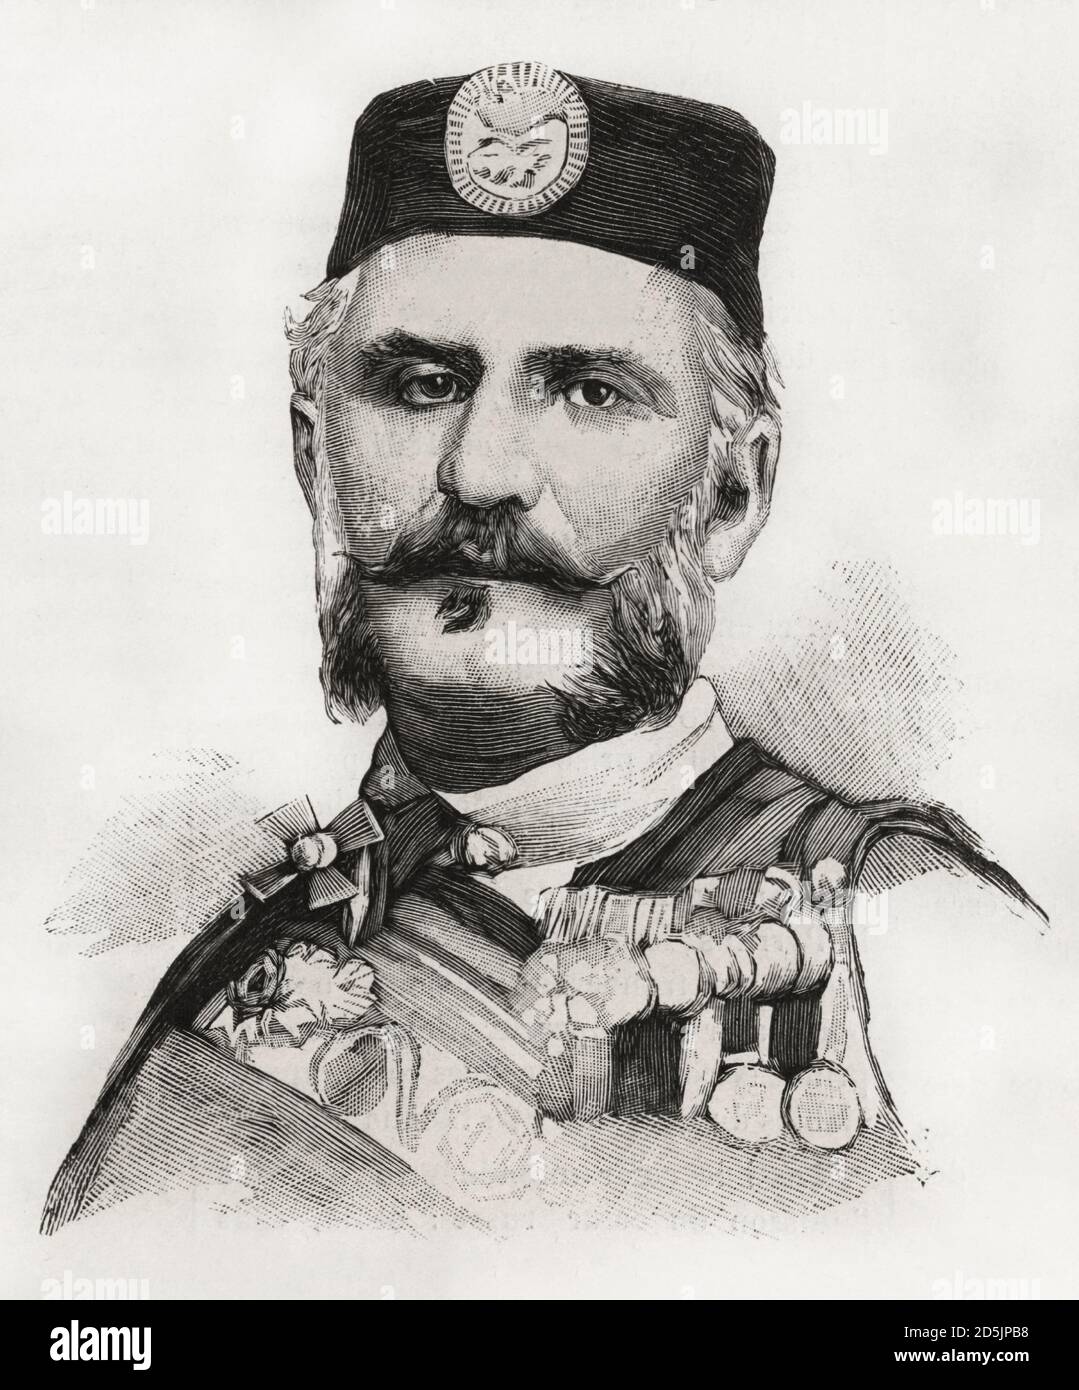 Nicola i di Montenegro Nikola i Petrovic-Njegos (1841 – 1921) fu il governatore del Montenegro dal 1860 al 1918, regnando come principe dal 1860 al 1910 Foto Stock